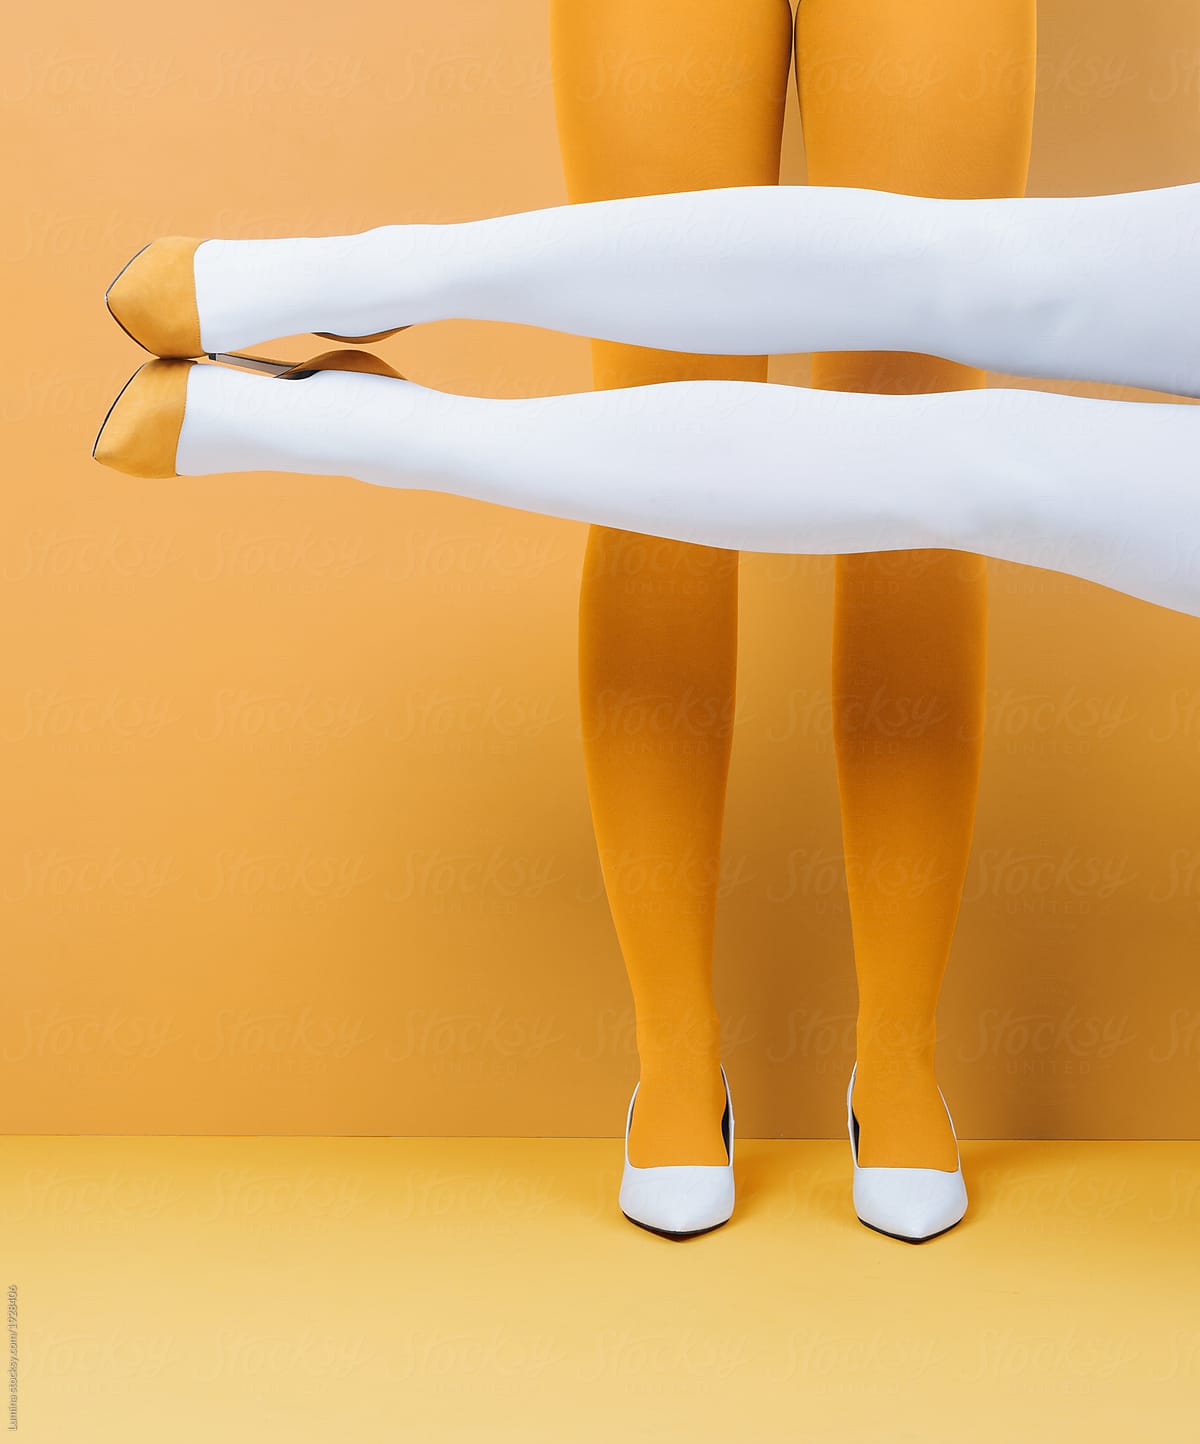 Women\'s Legs in Stiletto